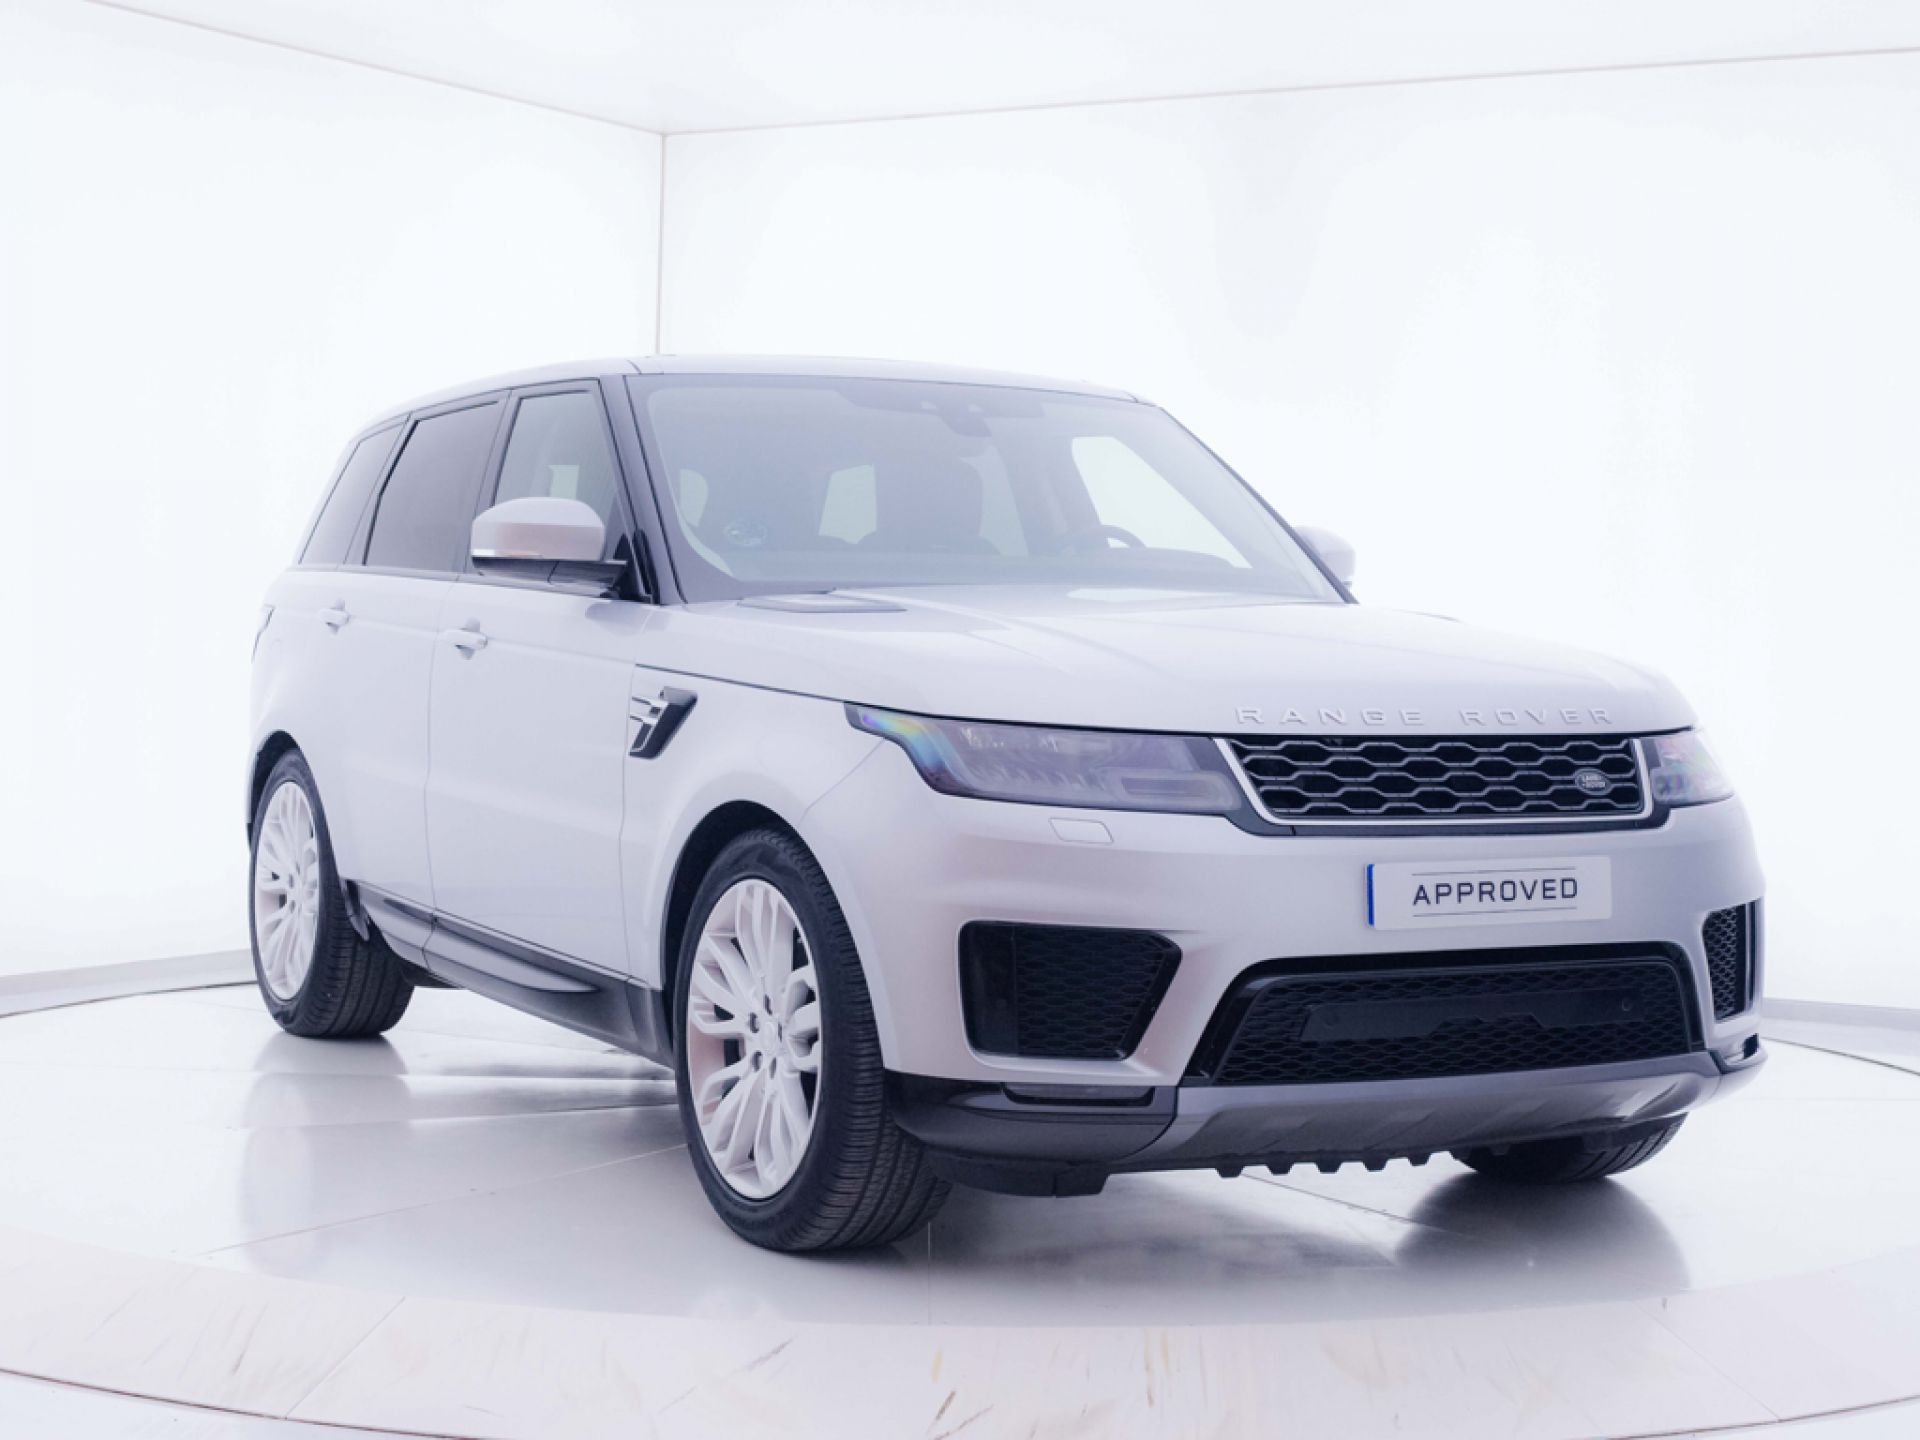 Land Rover Rover Sport I6 183kW (249CV) HSE Auto. 2021 segunda mano | Precio y ficha técnica